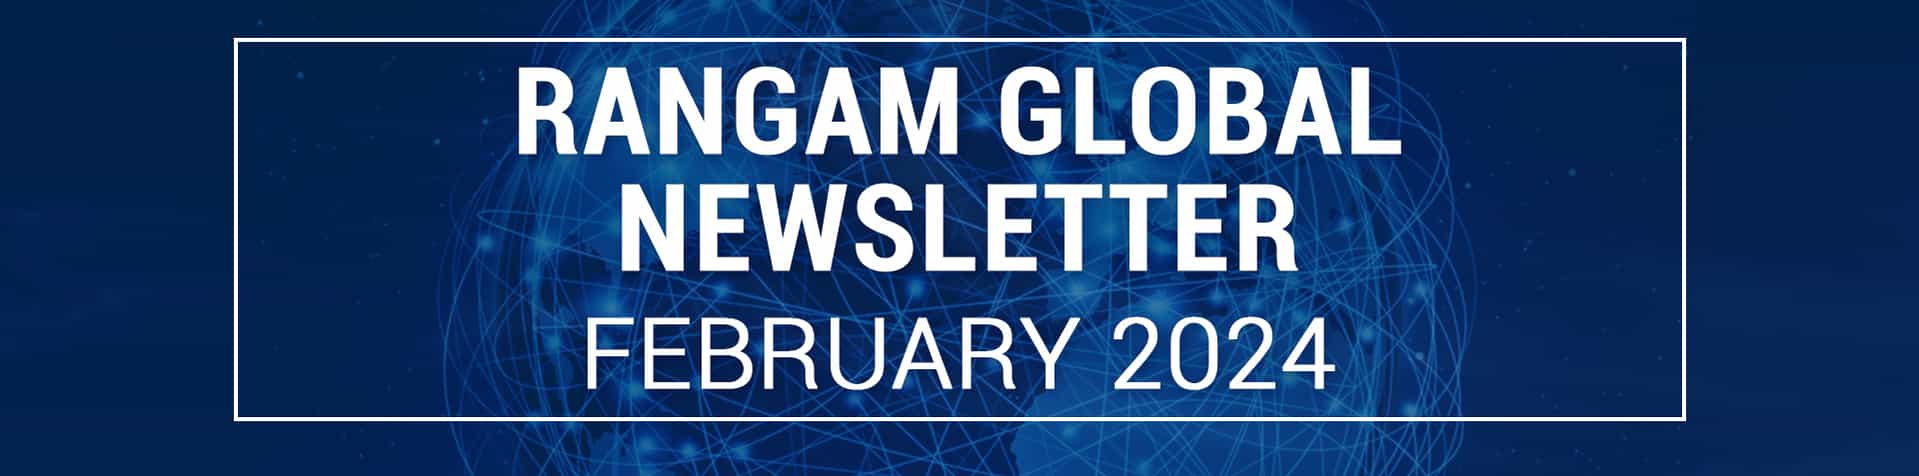 Rangam Global Newsletter February 2024